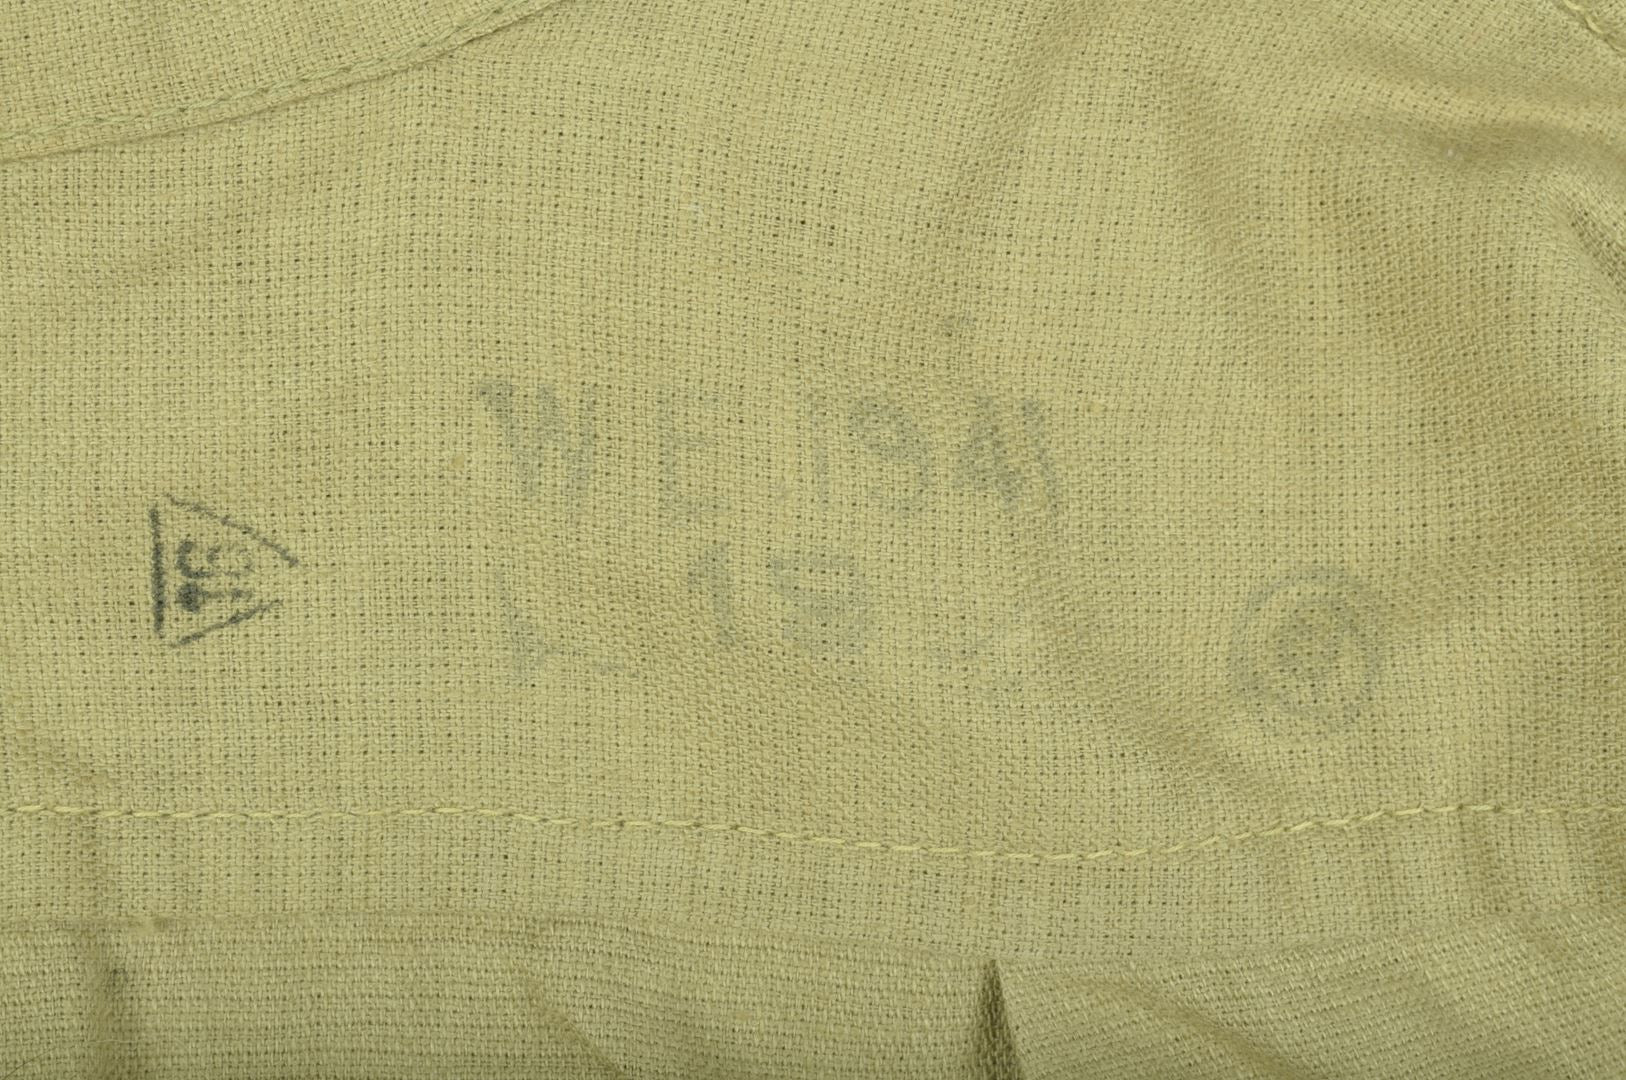 Vareuse tropicale "Bush Jacket" en Aertex de confection Indienne / datée 1941